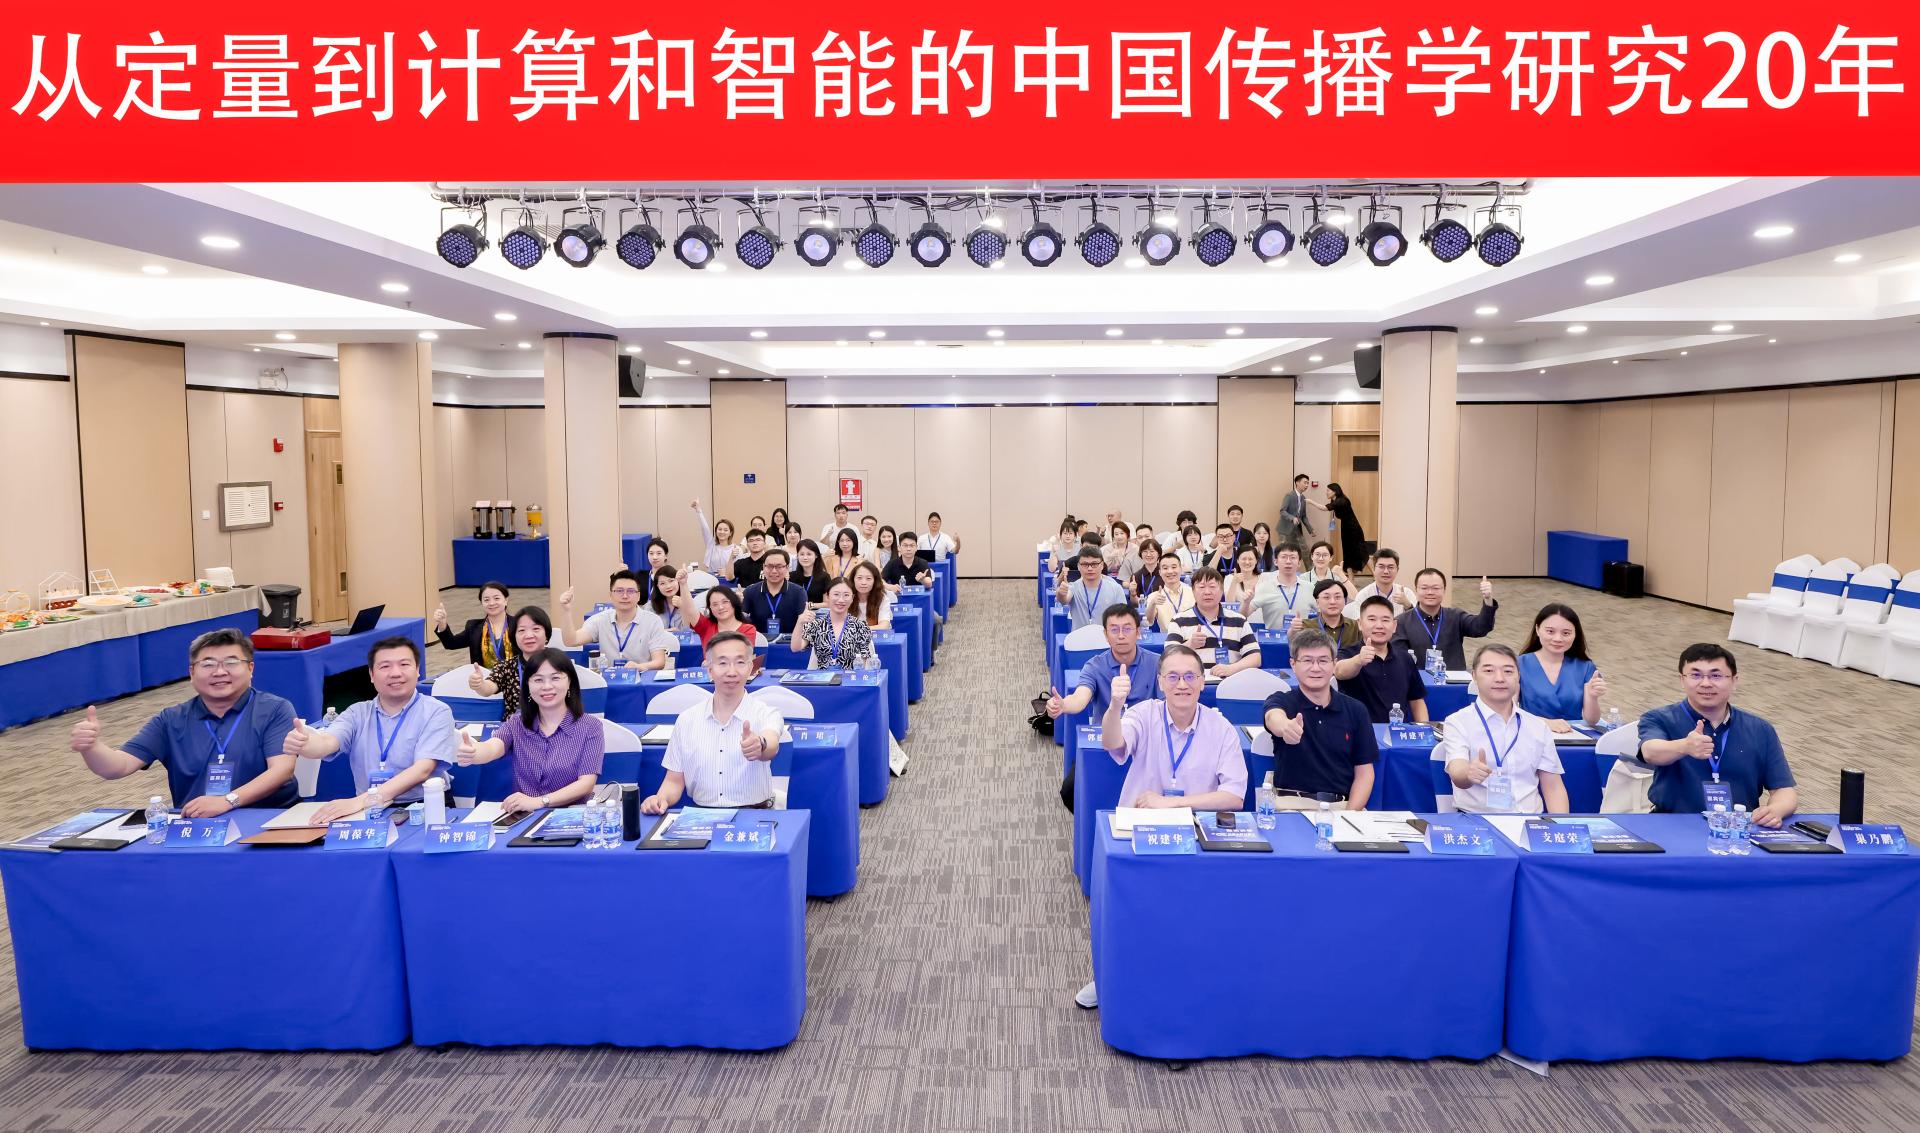 精确化、理论化、科学化: 从定量到计算和智能的中国传播学研究20年学术会议在深圳成功举办